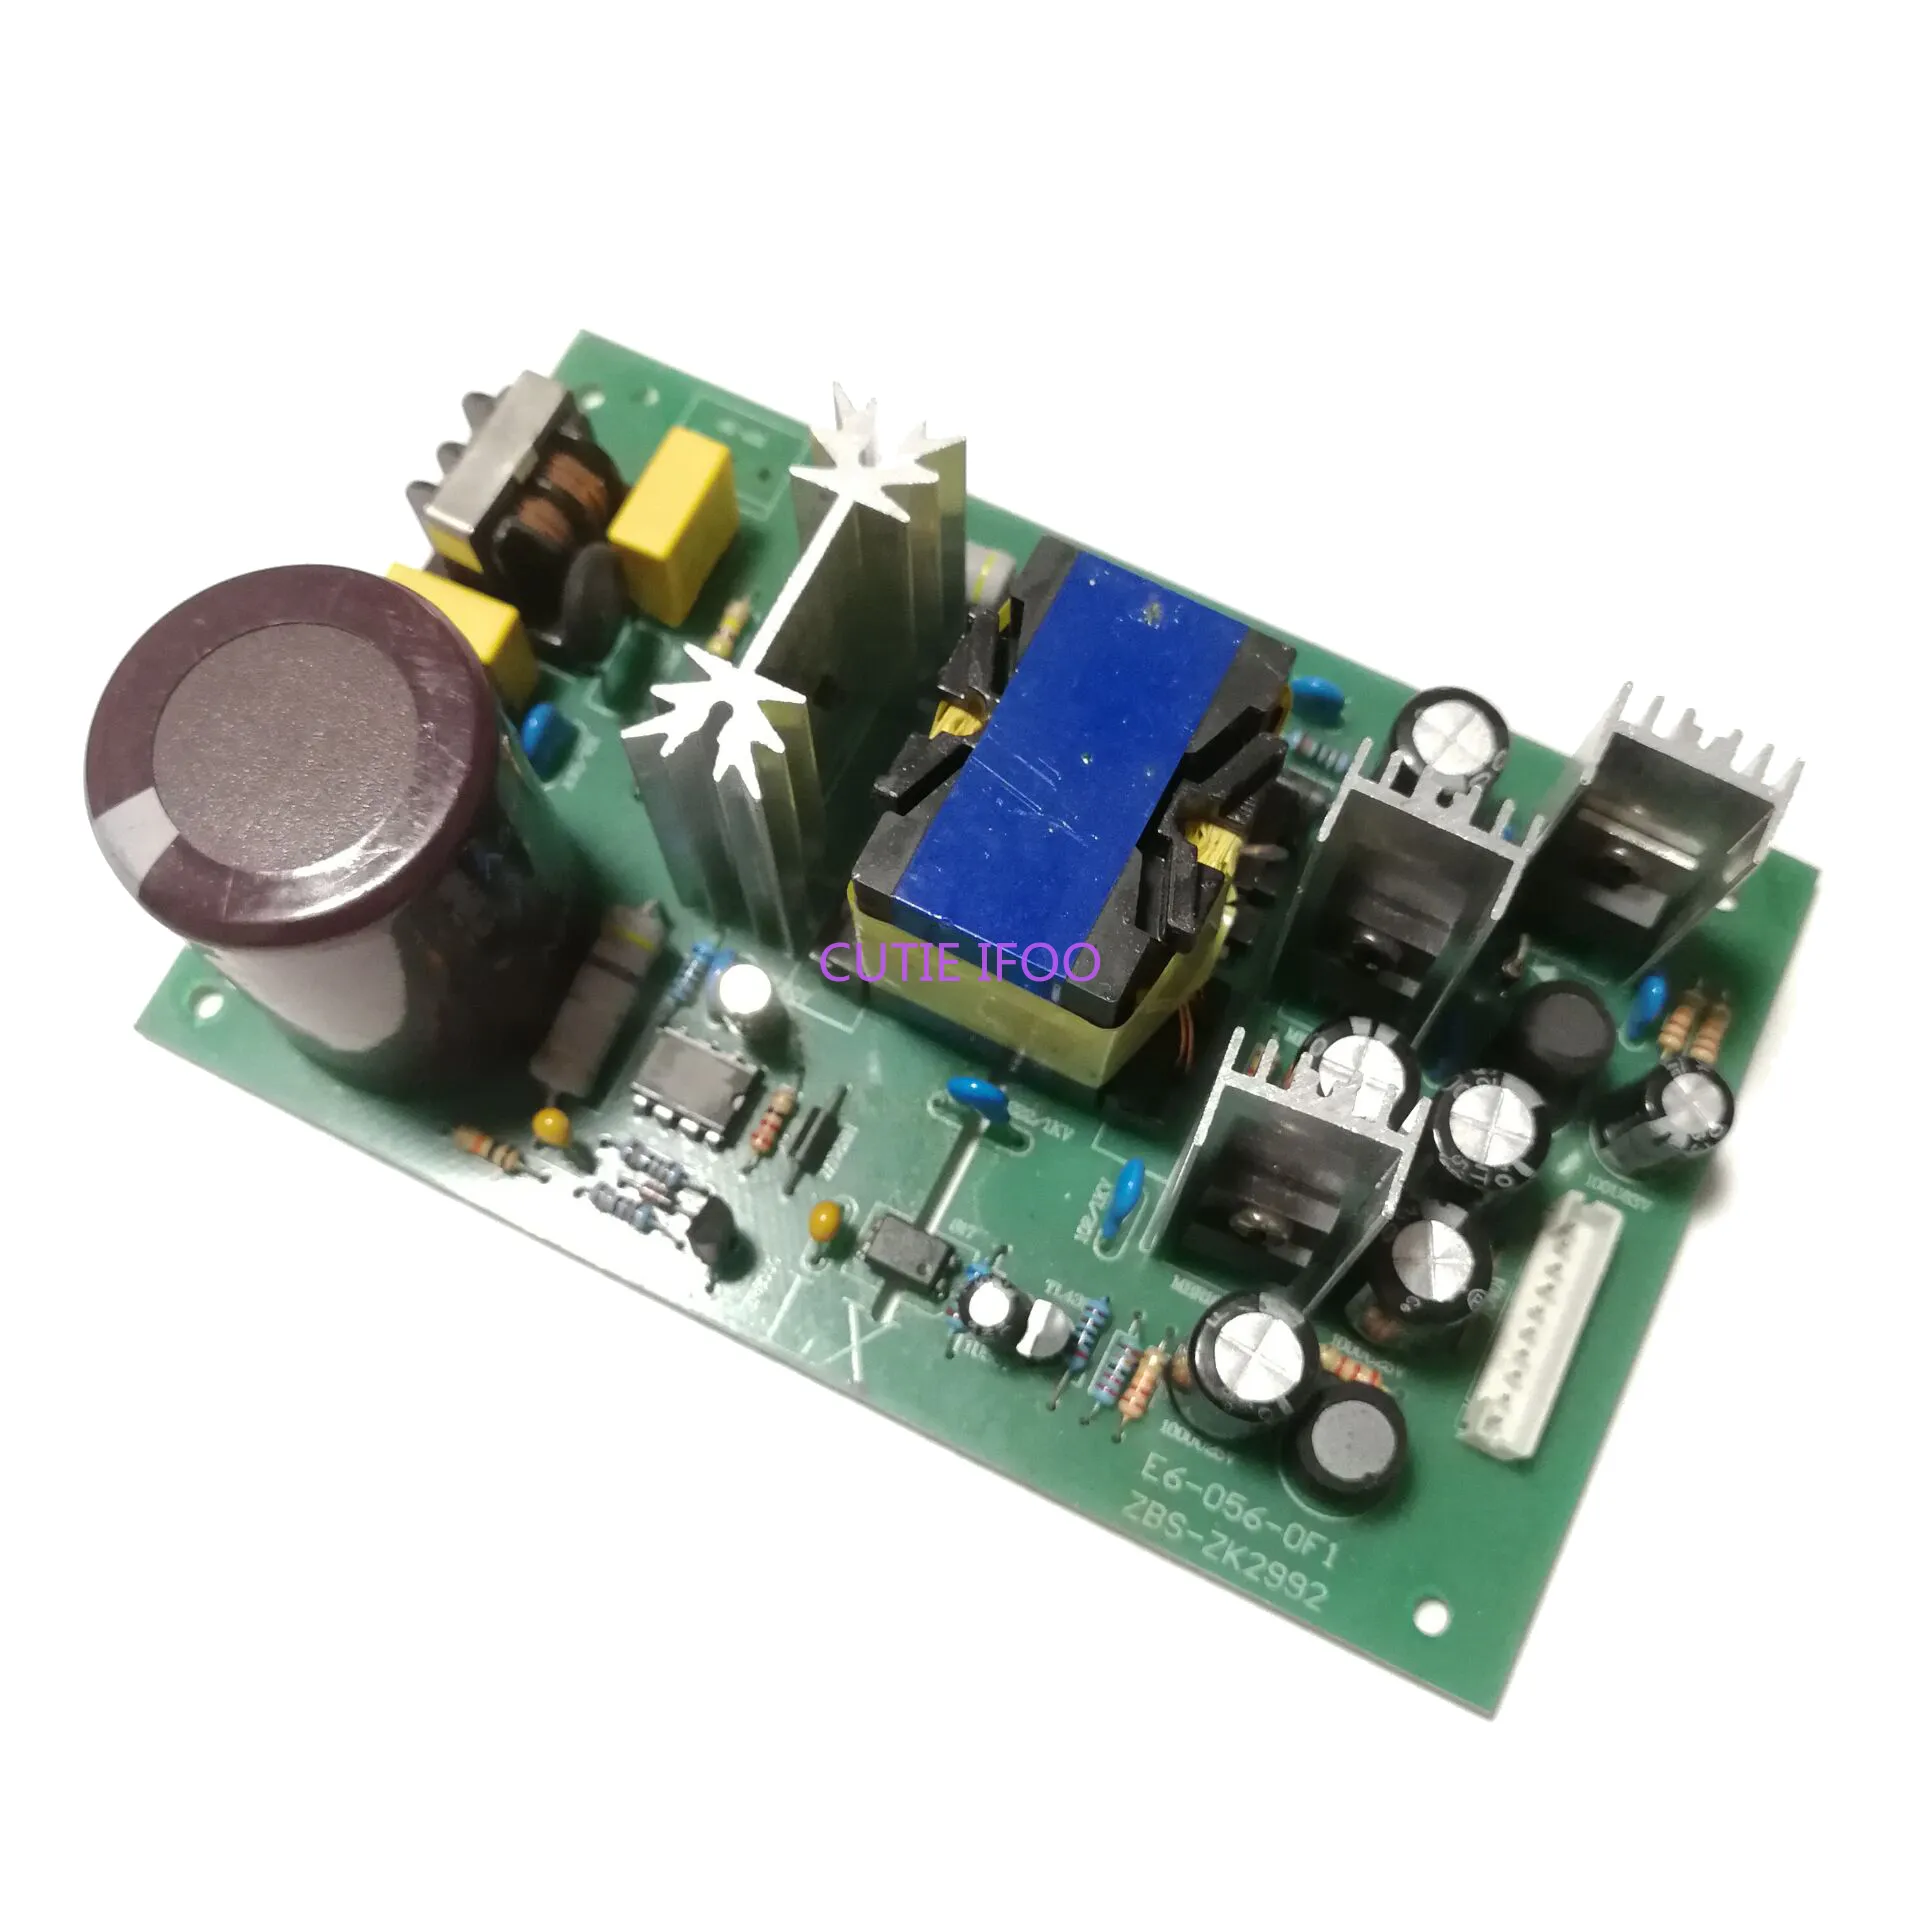 Adattatore PSU per scheda di alimentazione con spina di alimentazione per mixer serie LX7 LX9 LX10 15 V -15 V 48 V 50 W Intervallo di tensione in ingresso 110 V ~ 230 V Ripara e sostituisci il circuito